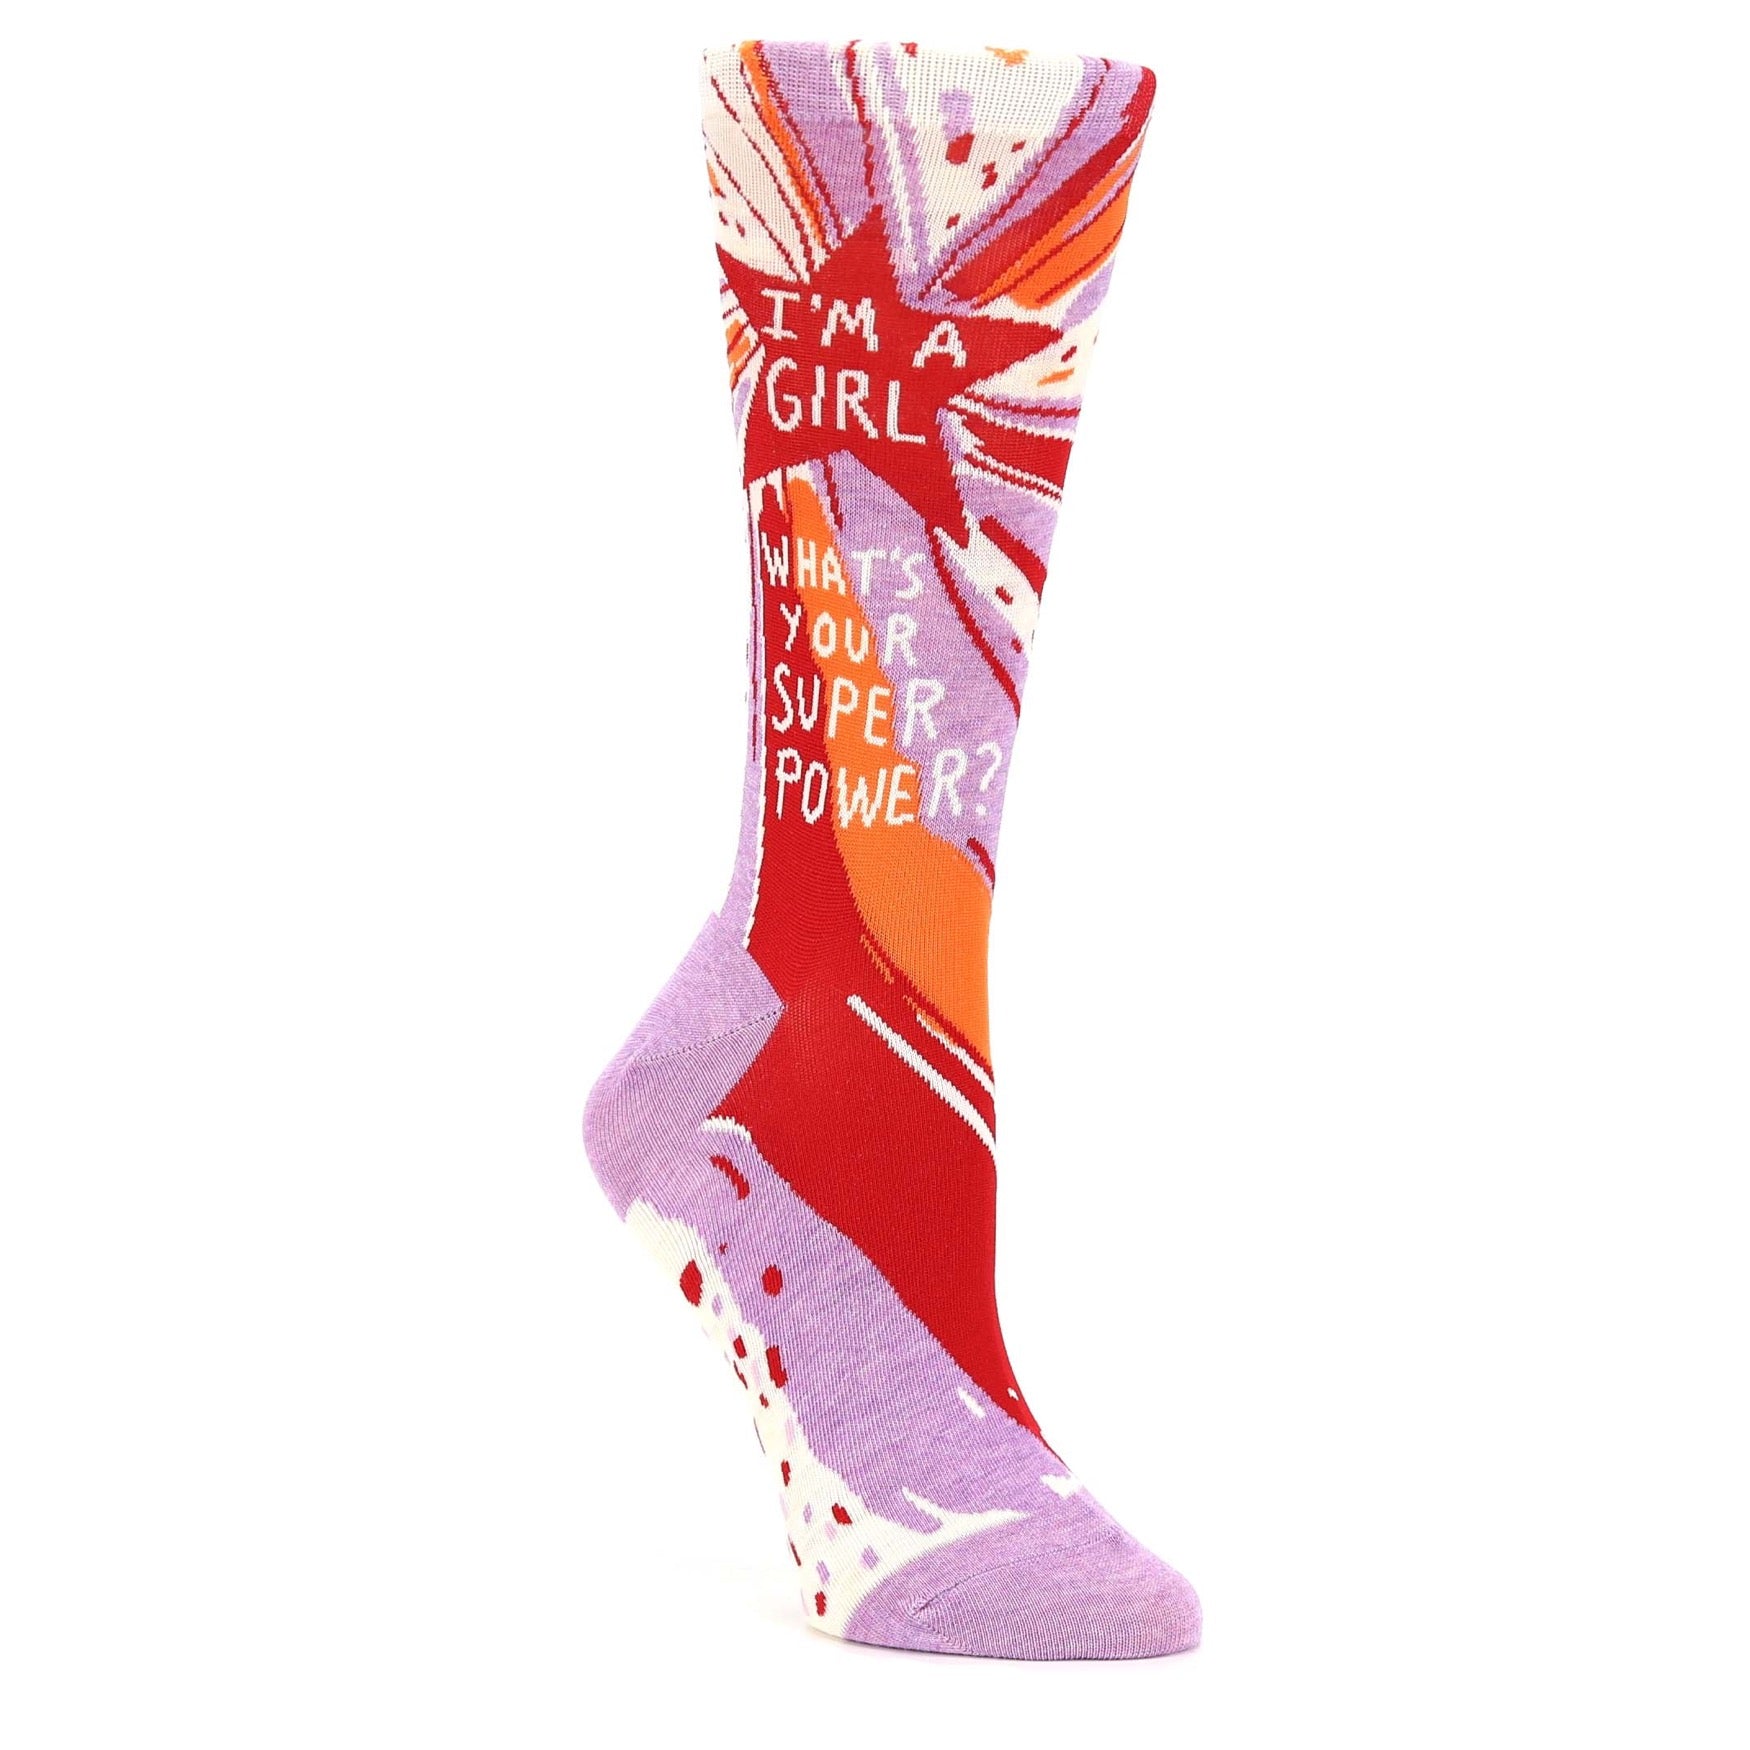 Superpower Socks - Novelty Dress Socks for Women